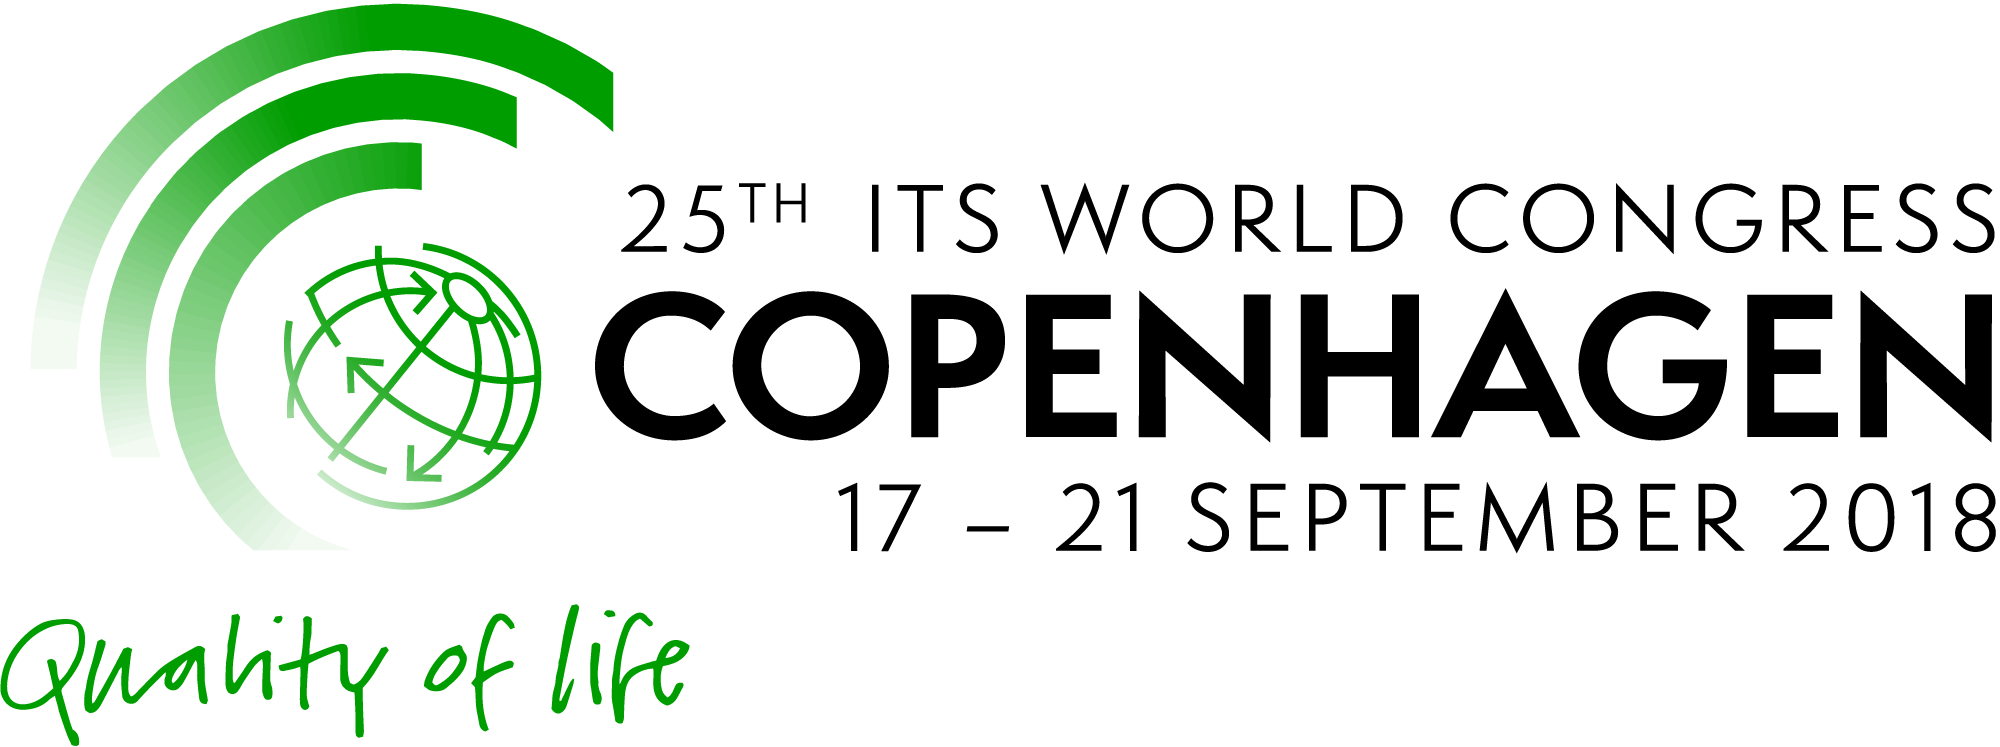 ITS-2018-Logo_HORIZONTAL_PIXEL